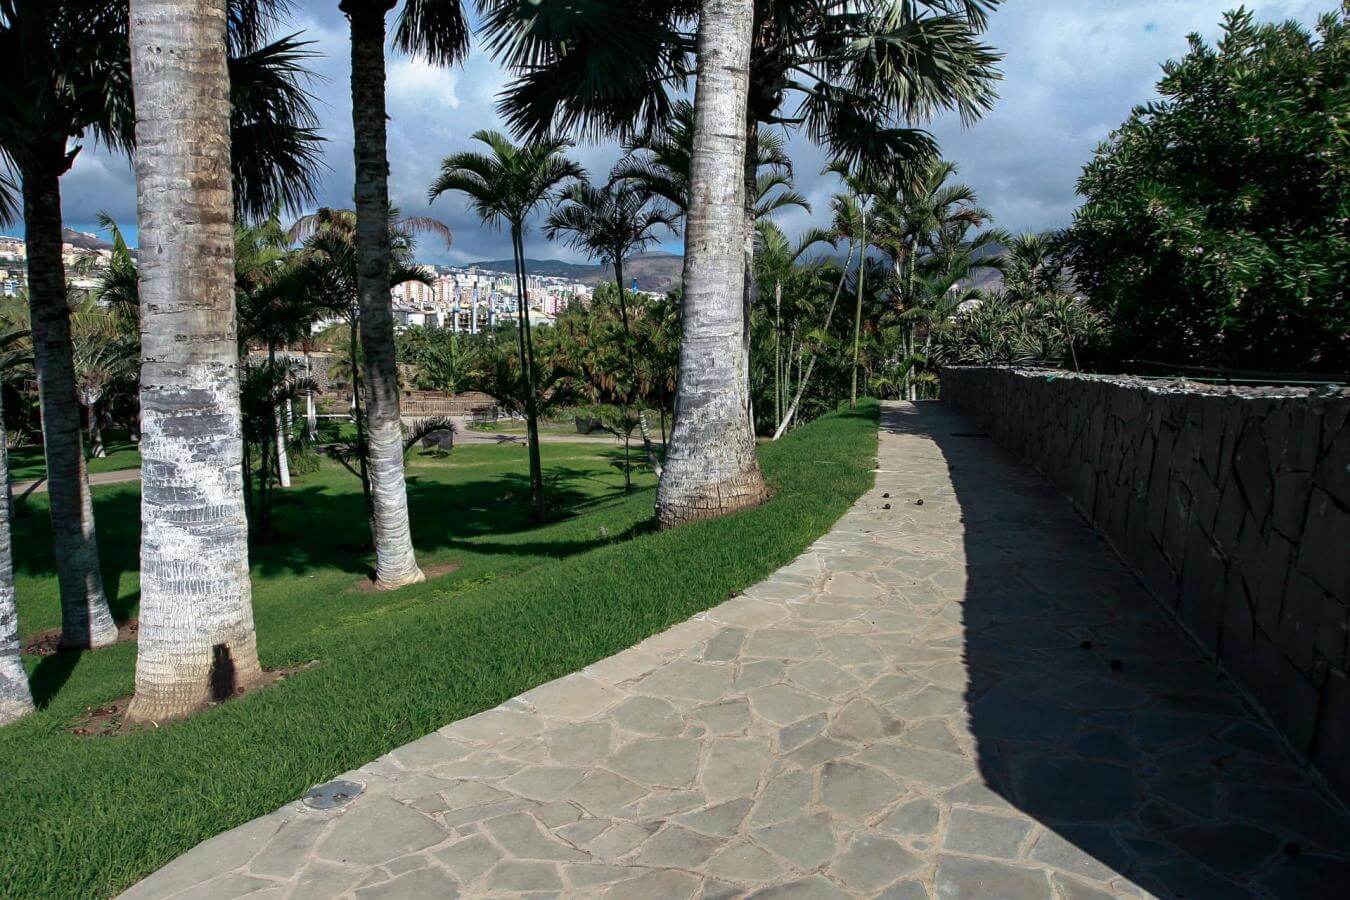 Visita a pie a la mejor colección de palmeras tropicales - galeria3